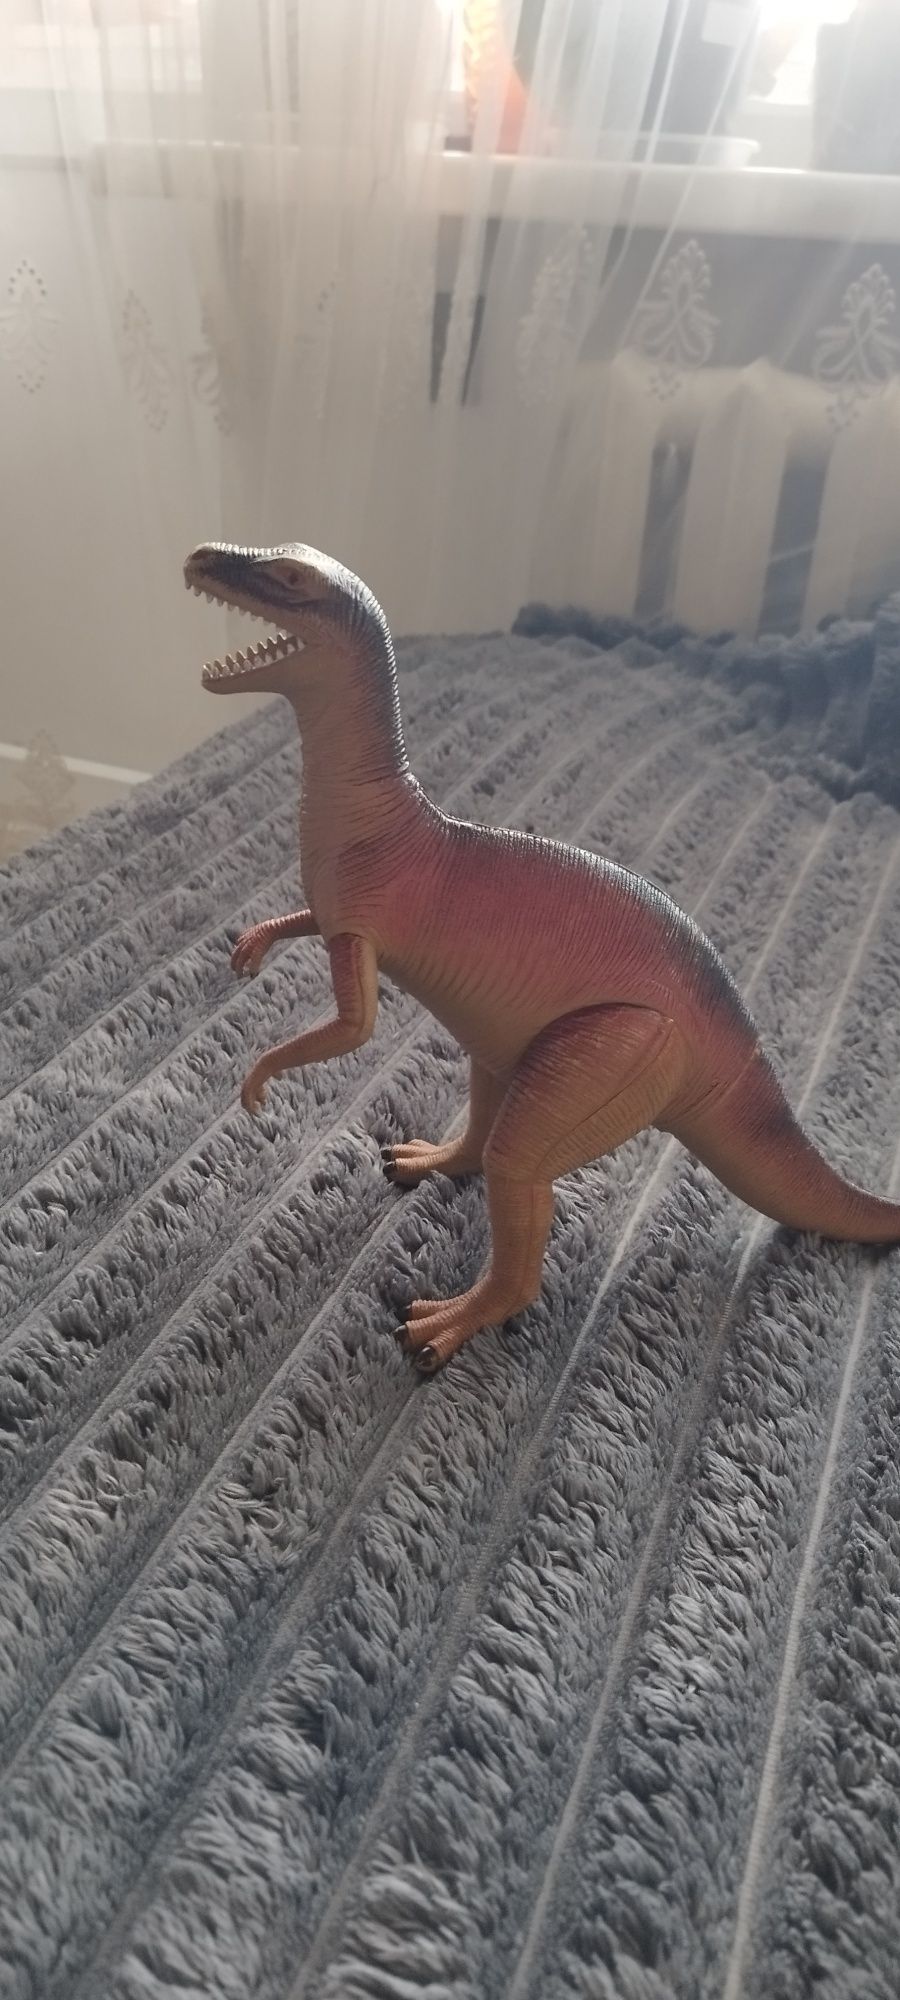 Продам динозавра